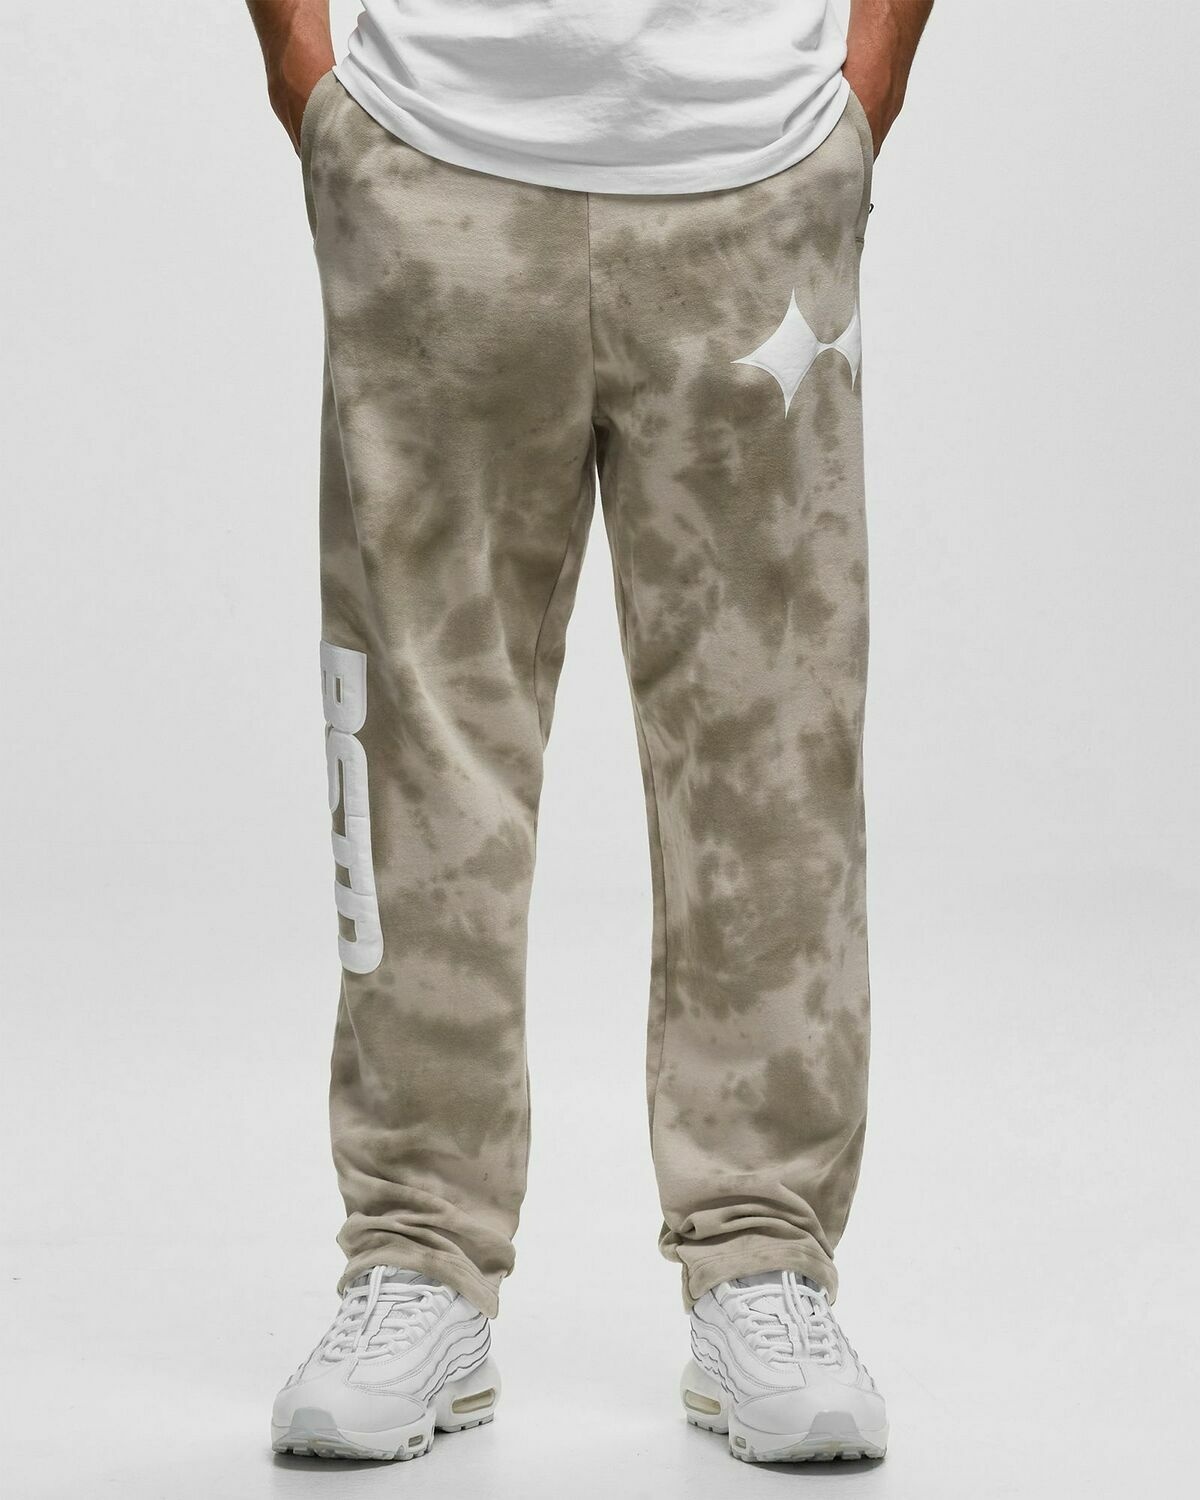 Bstn Brand Tie Dye Oversized Sweatpants Beige - Mens - Sweatpants